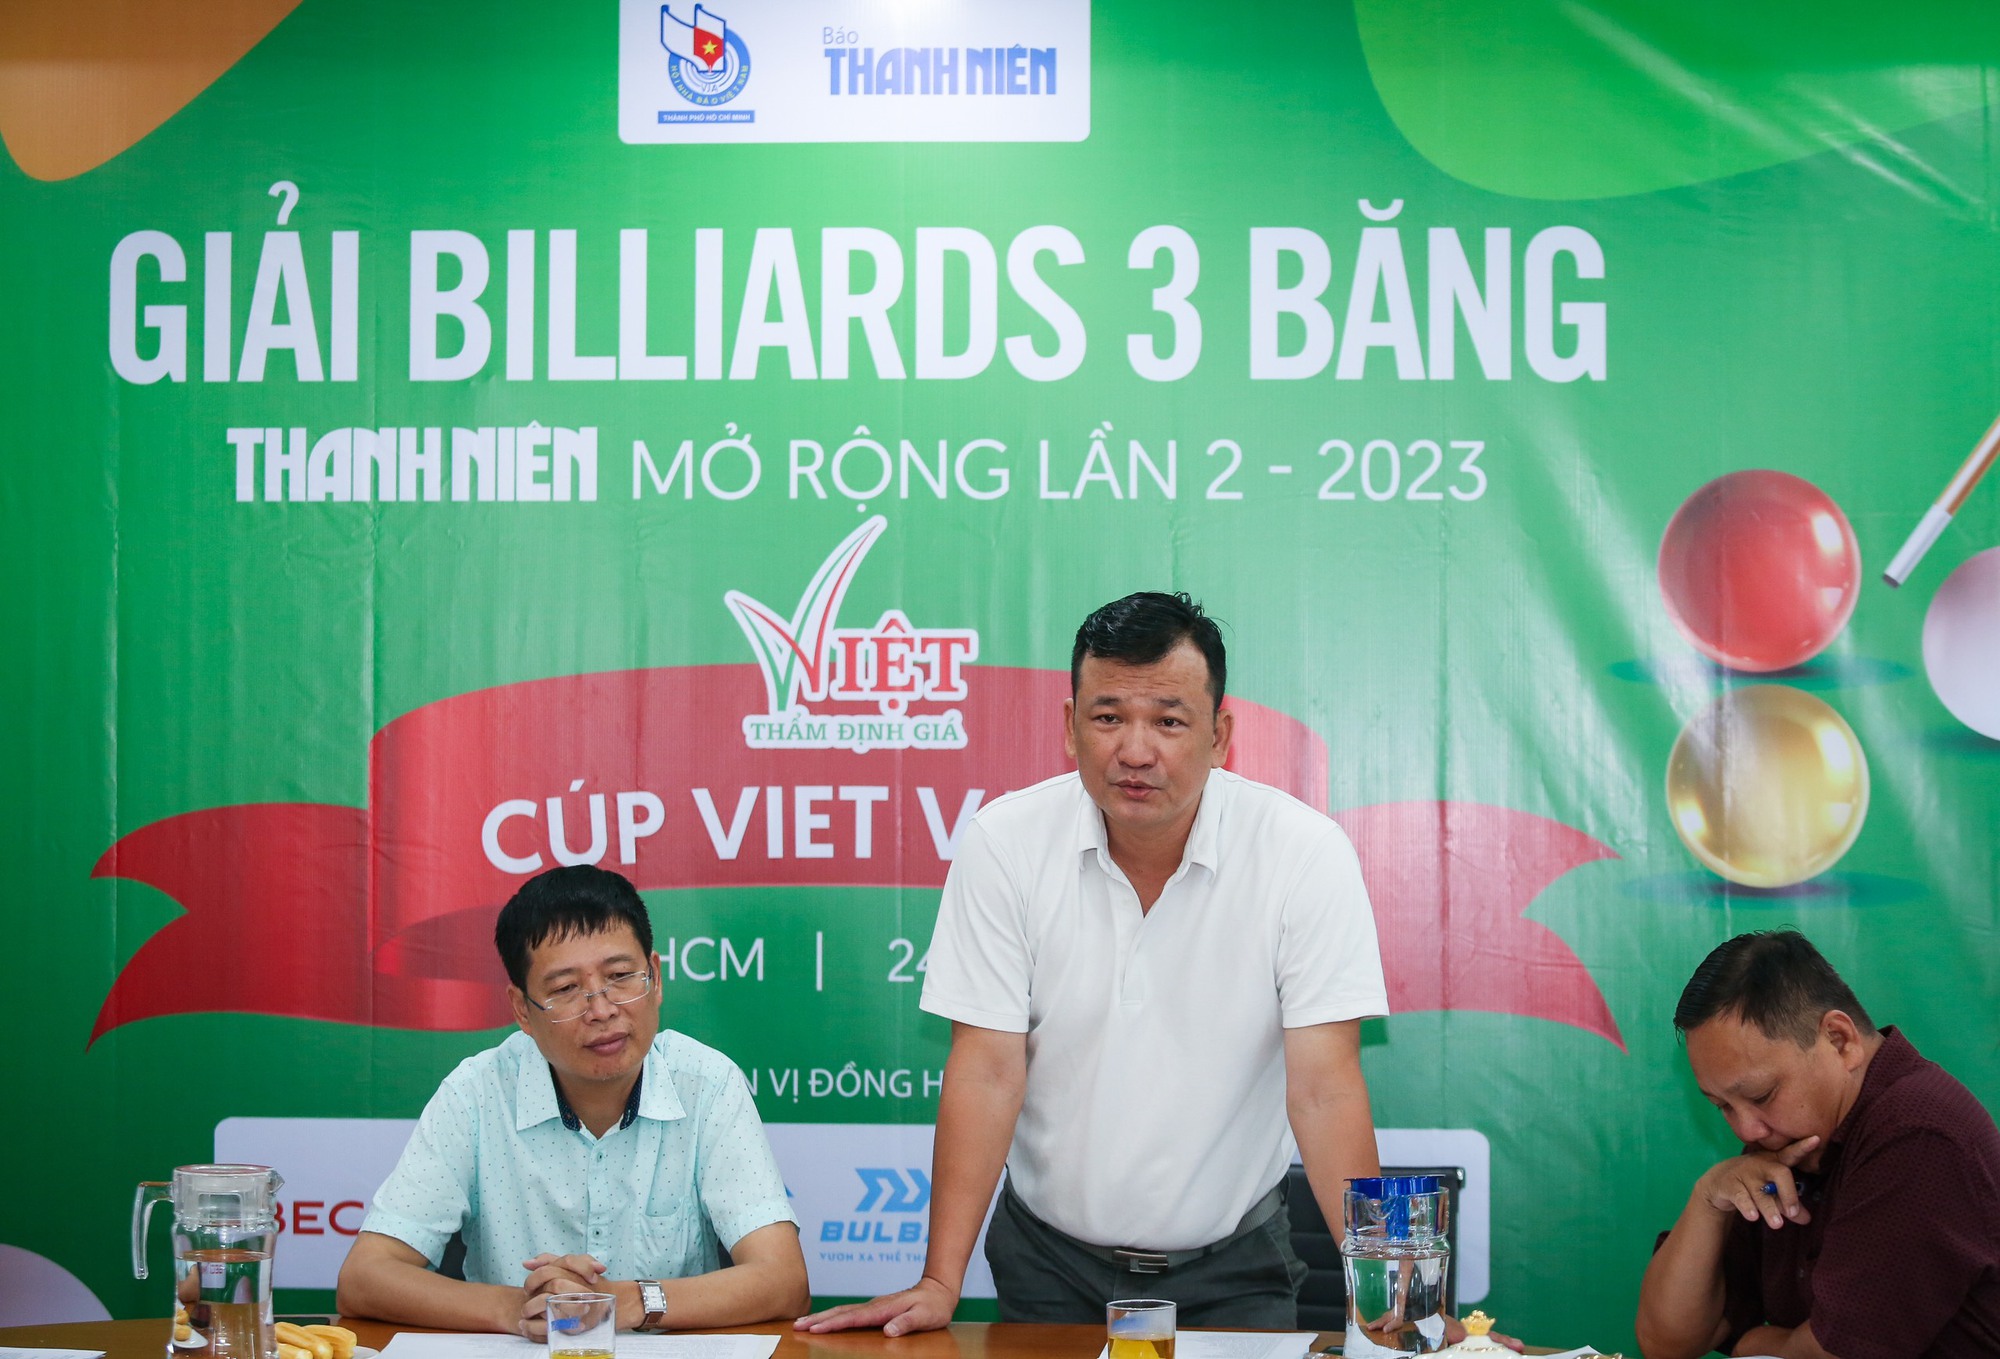 48 tay cơ tranh tài tại giải billiards 3 băng Thanh Niên mở rộng 2023 - Ảnh 1.